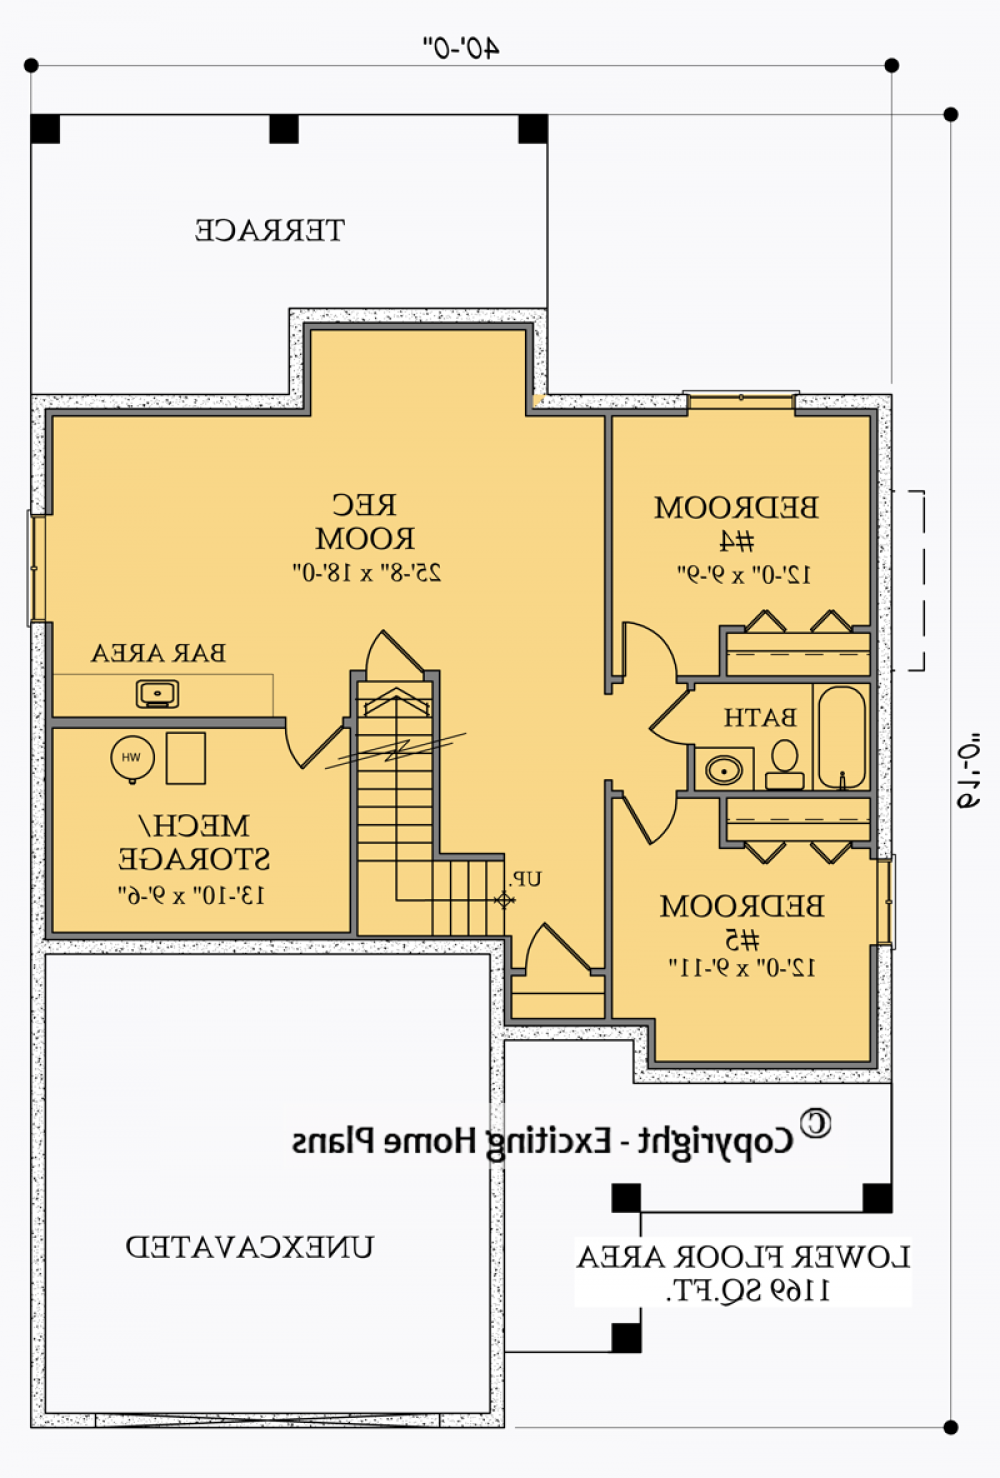 House Plan E1025-10 Lower Floor Plan REVERSE